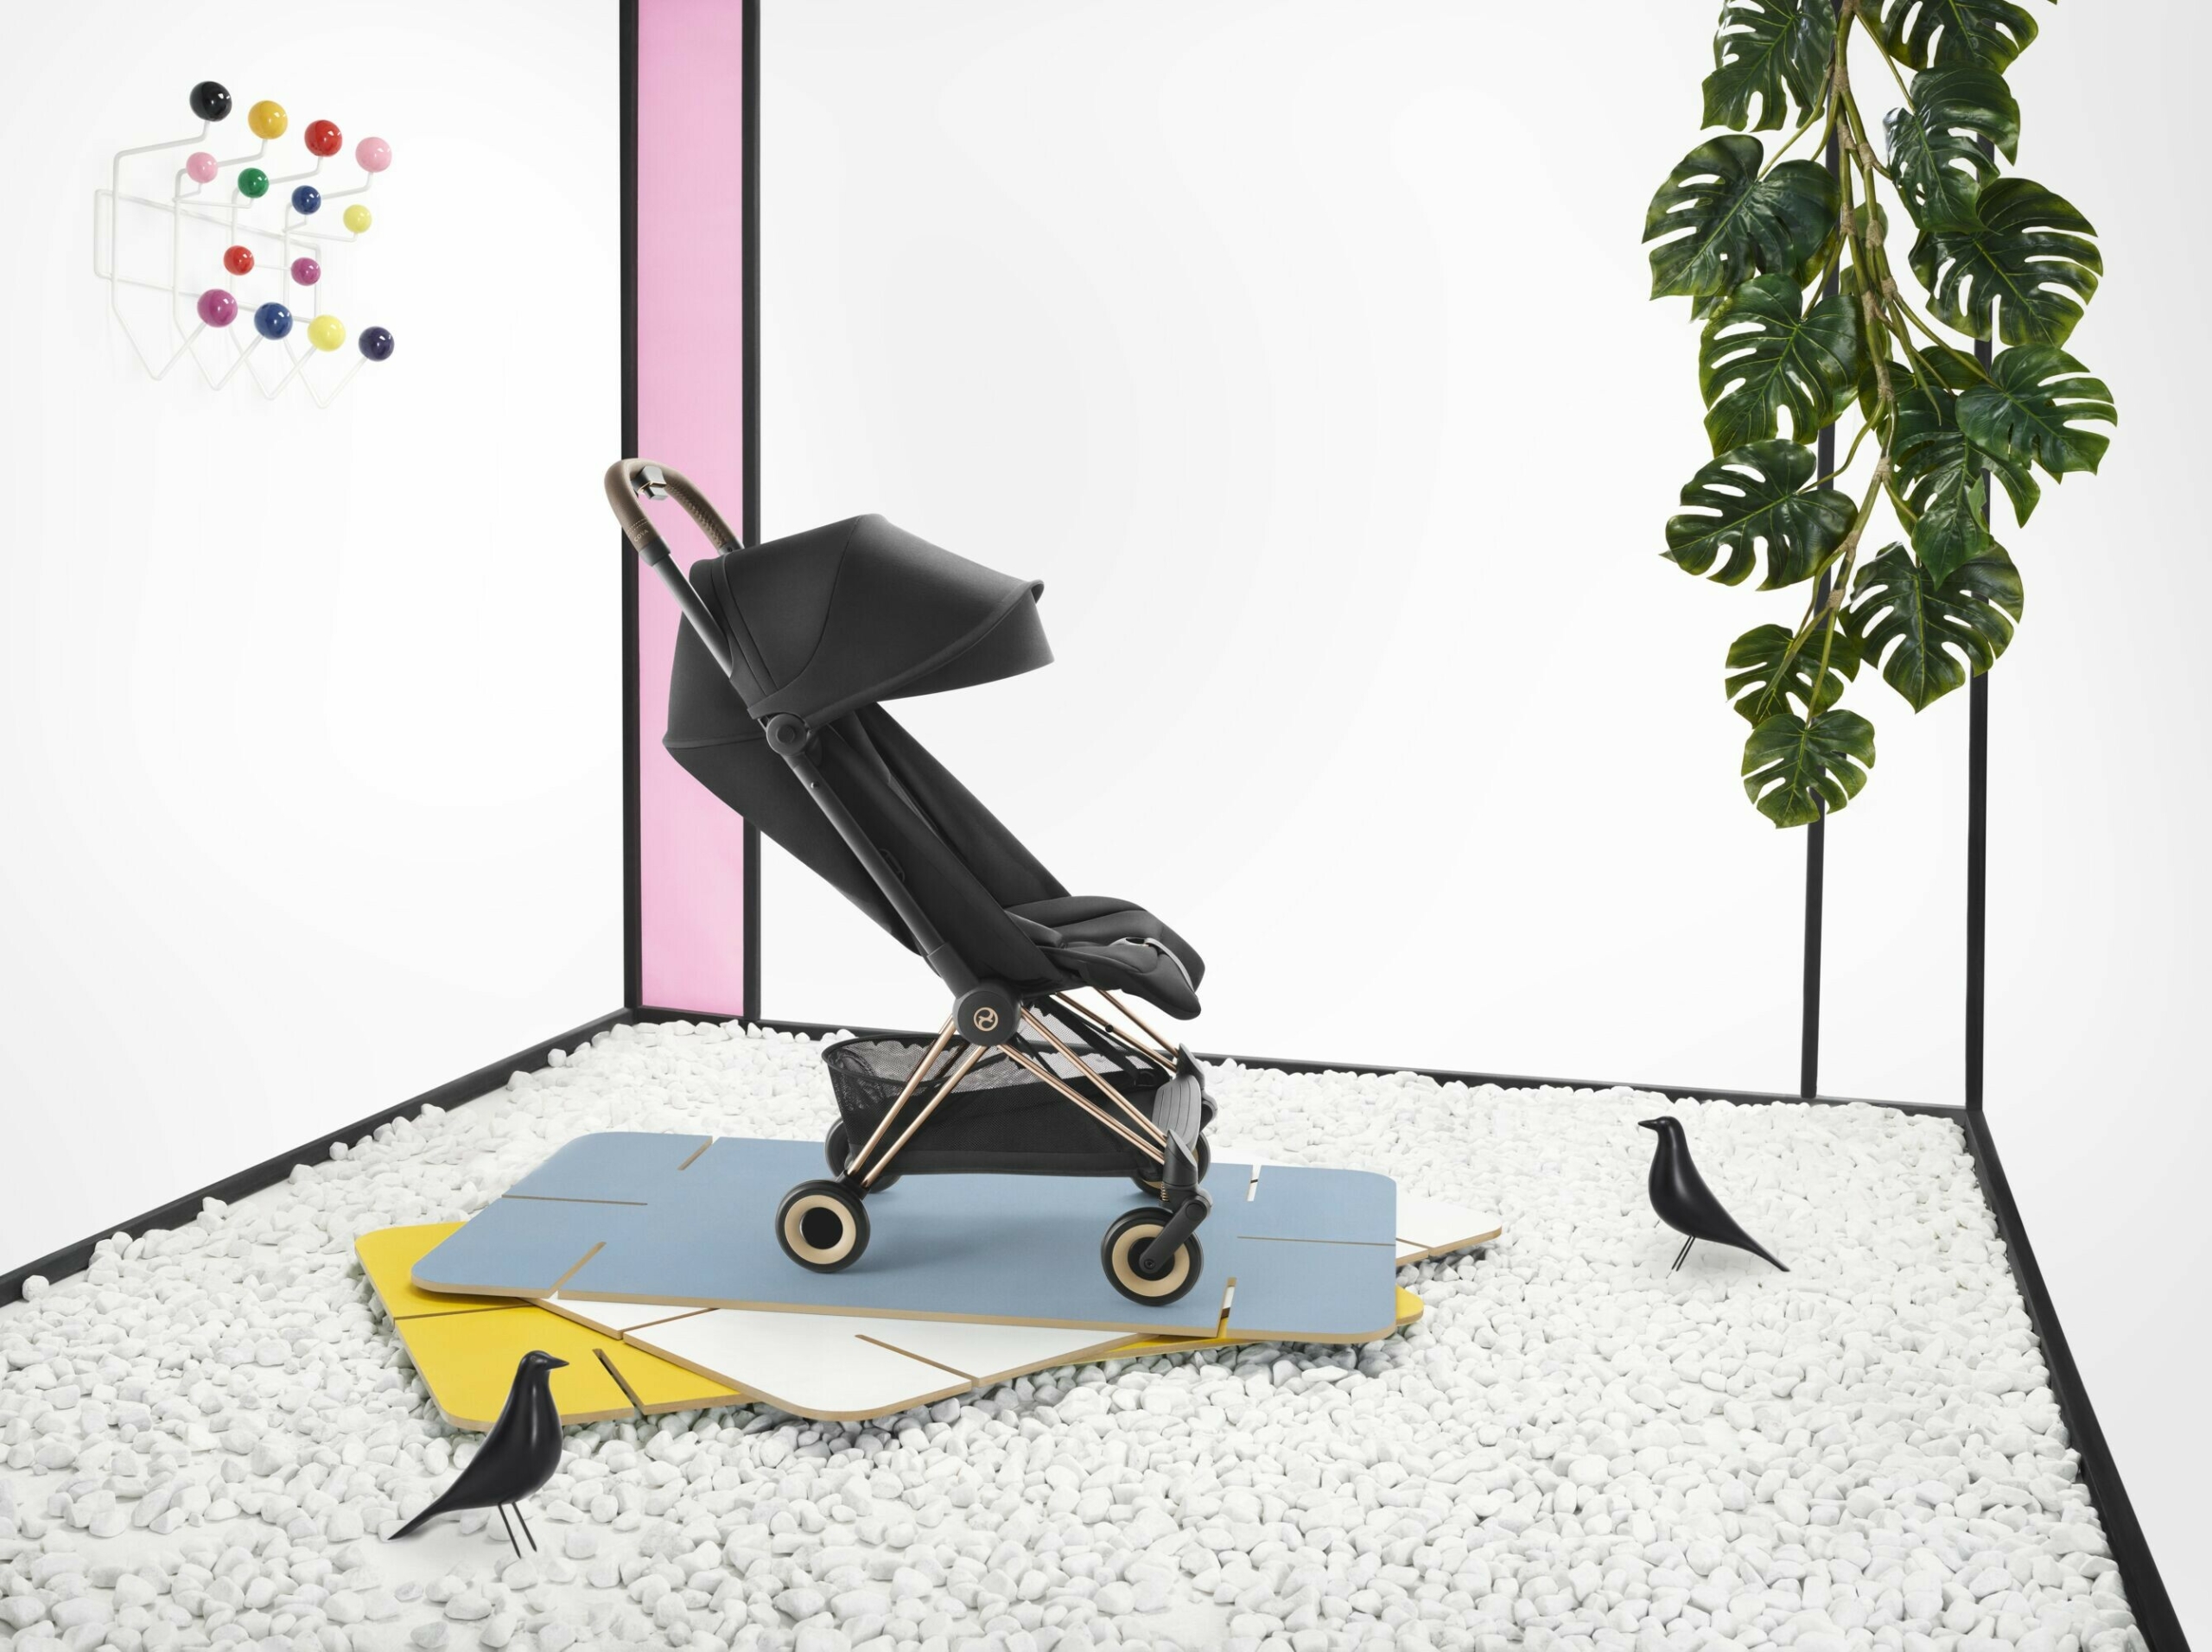 عربة COŸA الحصرية للأطفال تنضمّ إلى مجموعة البلاتينوم من "سايبكس" 